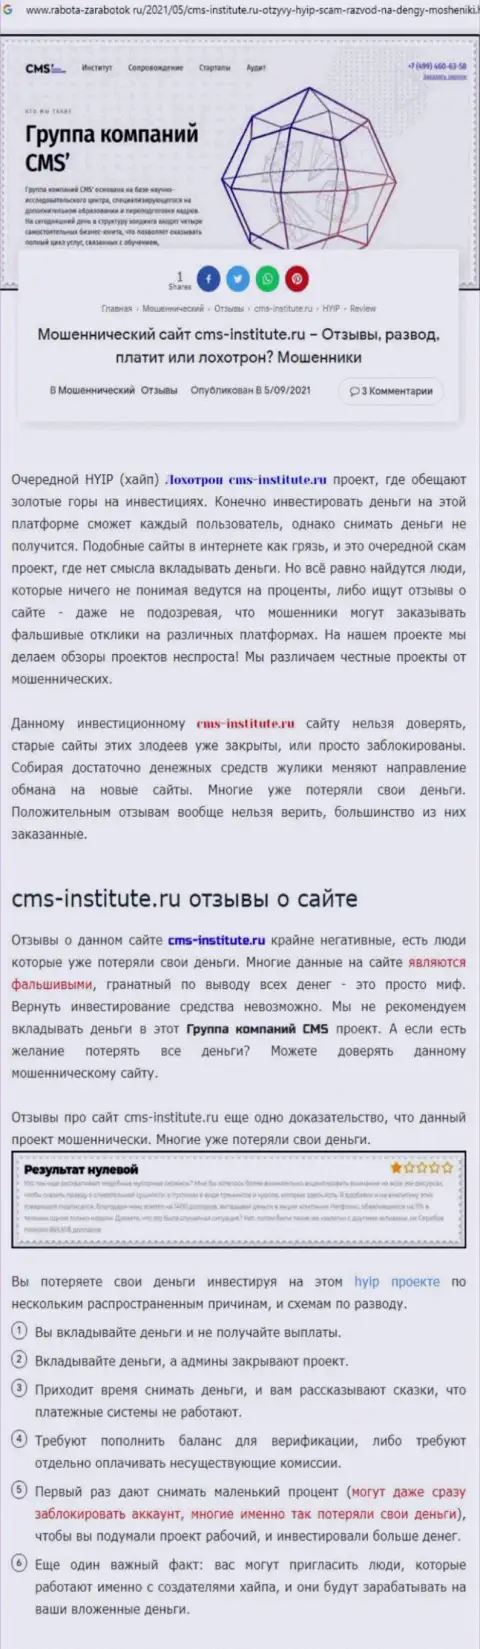 CMS-Institute Ru - это нахальный развод реальных клиентов (обзорная статья неправомерных манипуляций)